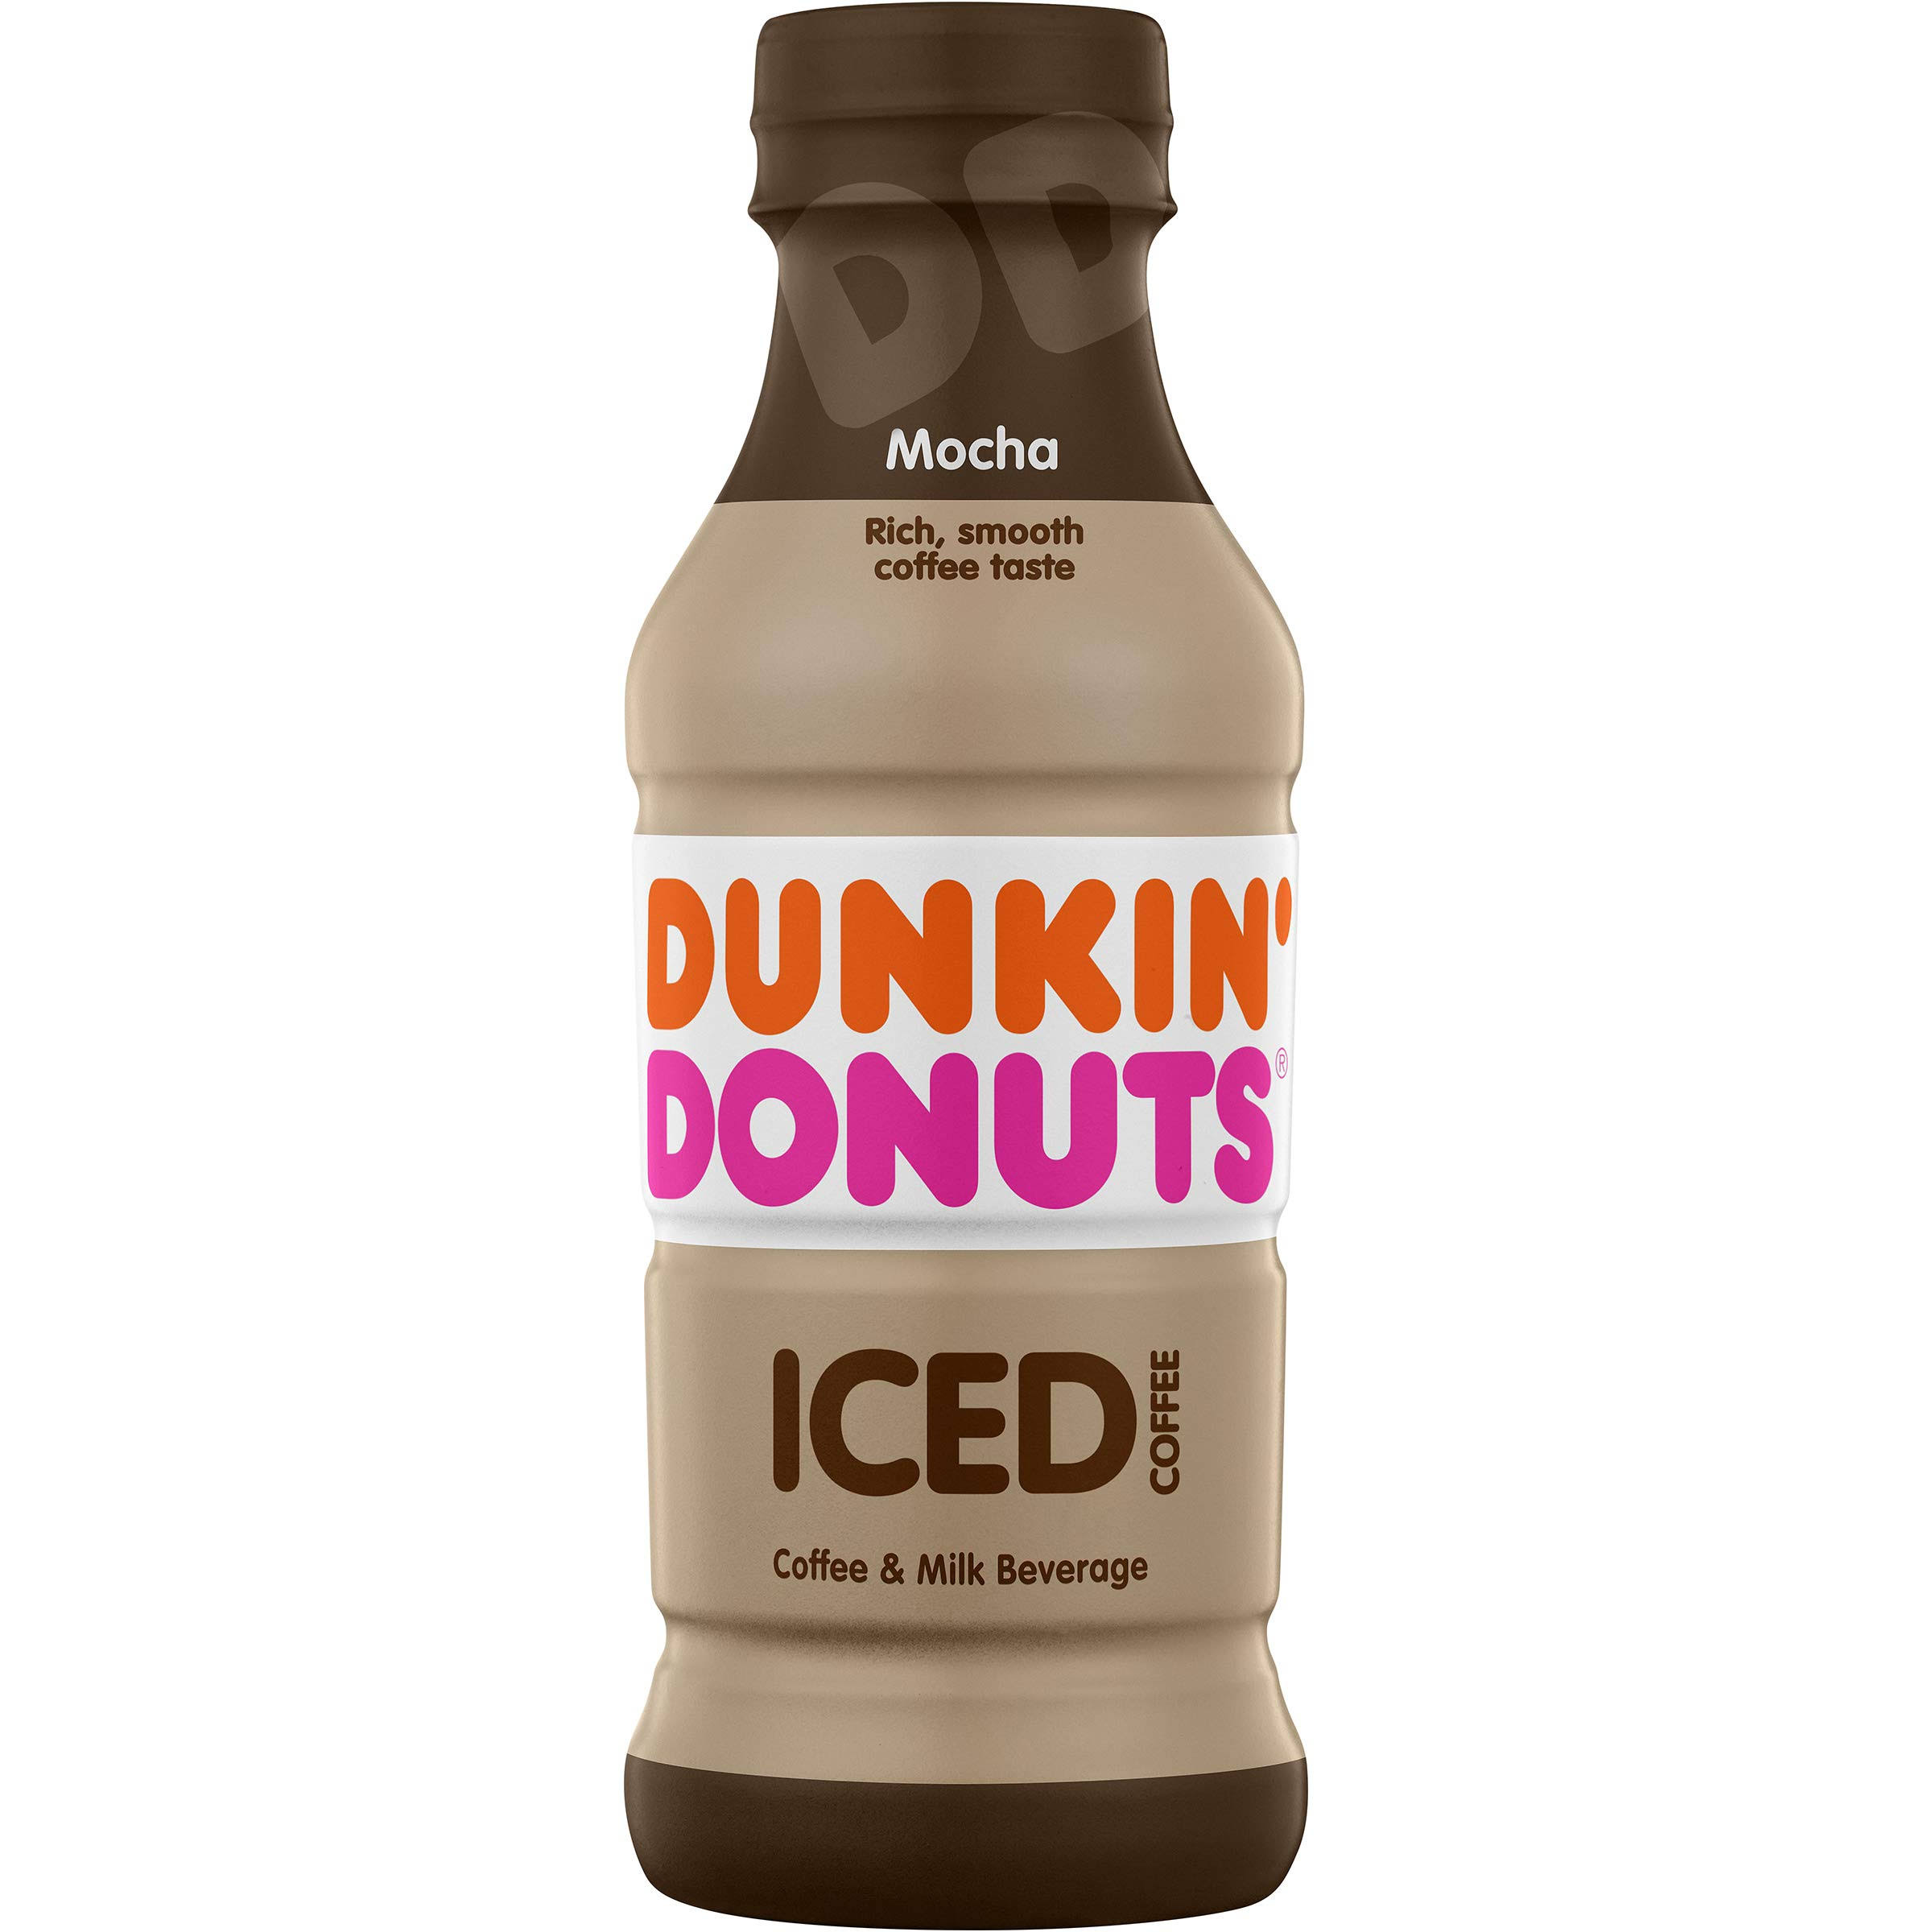 Dunkin Donuts Mocha Iced Coffee Bottle, 13.7 fl oz